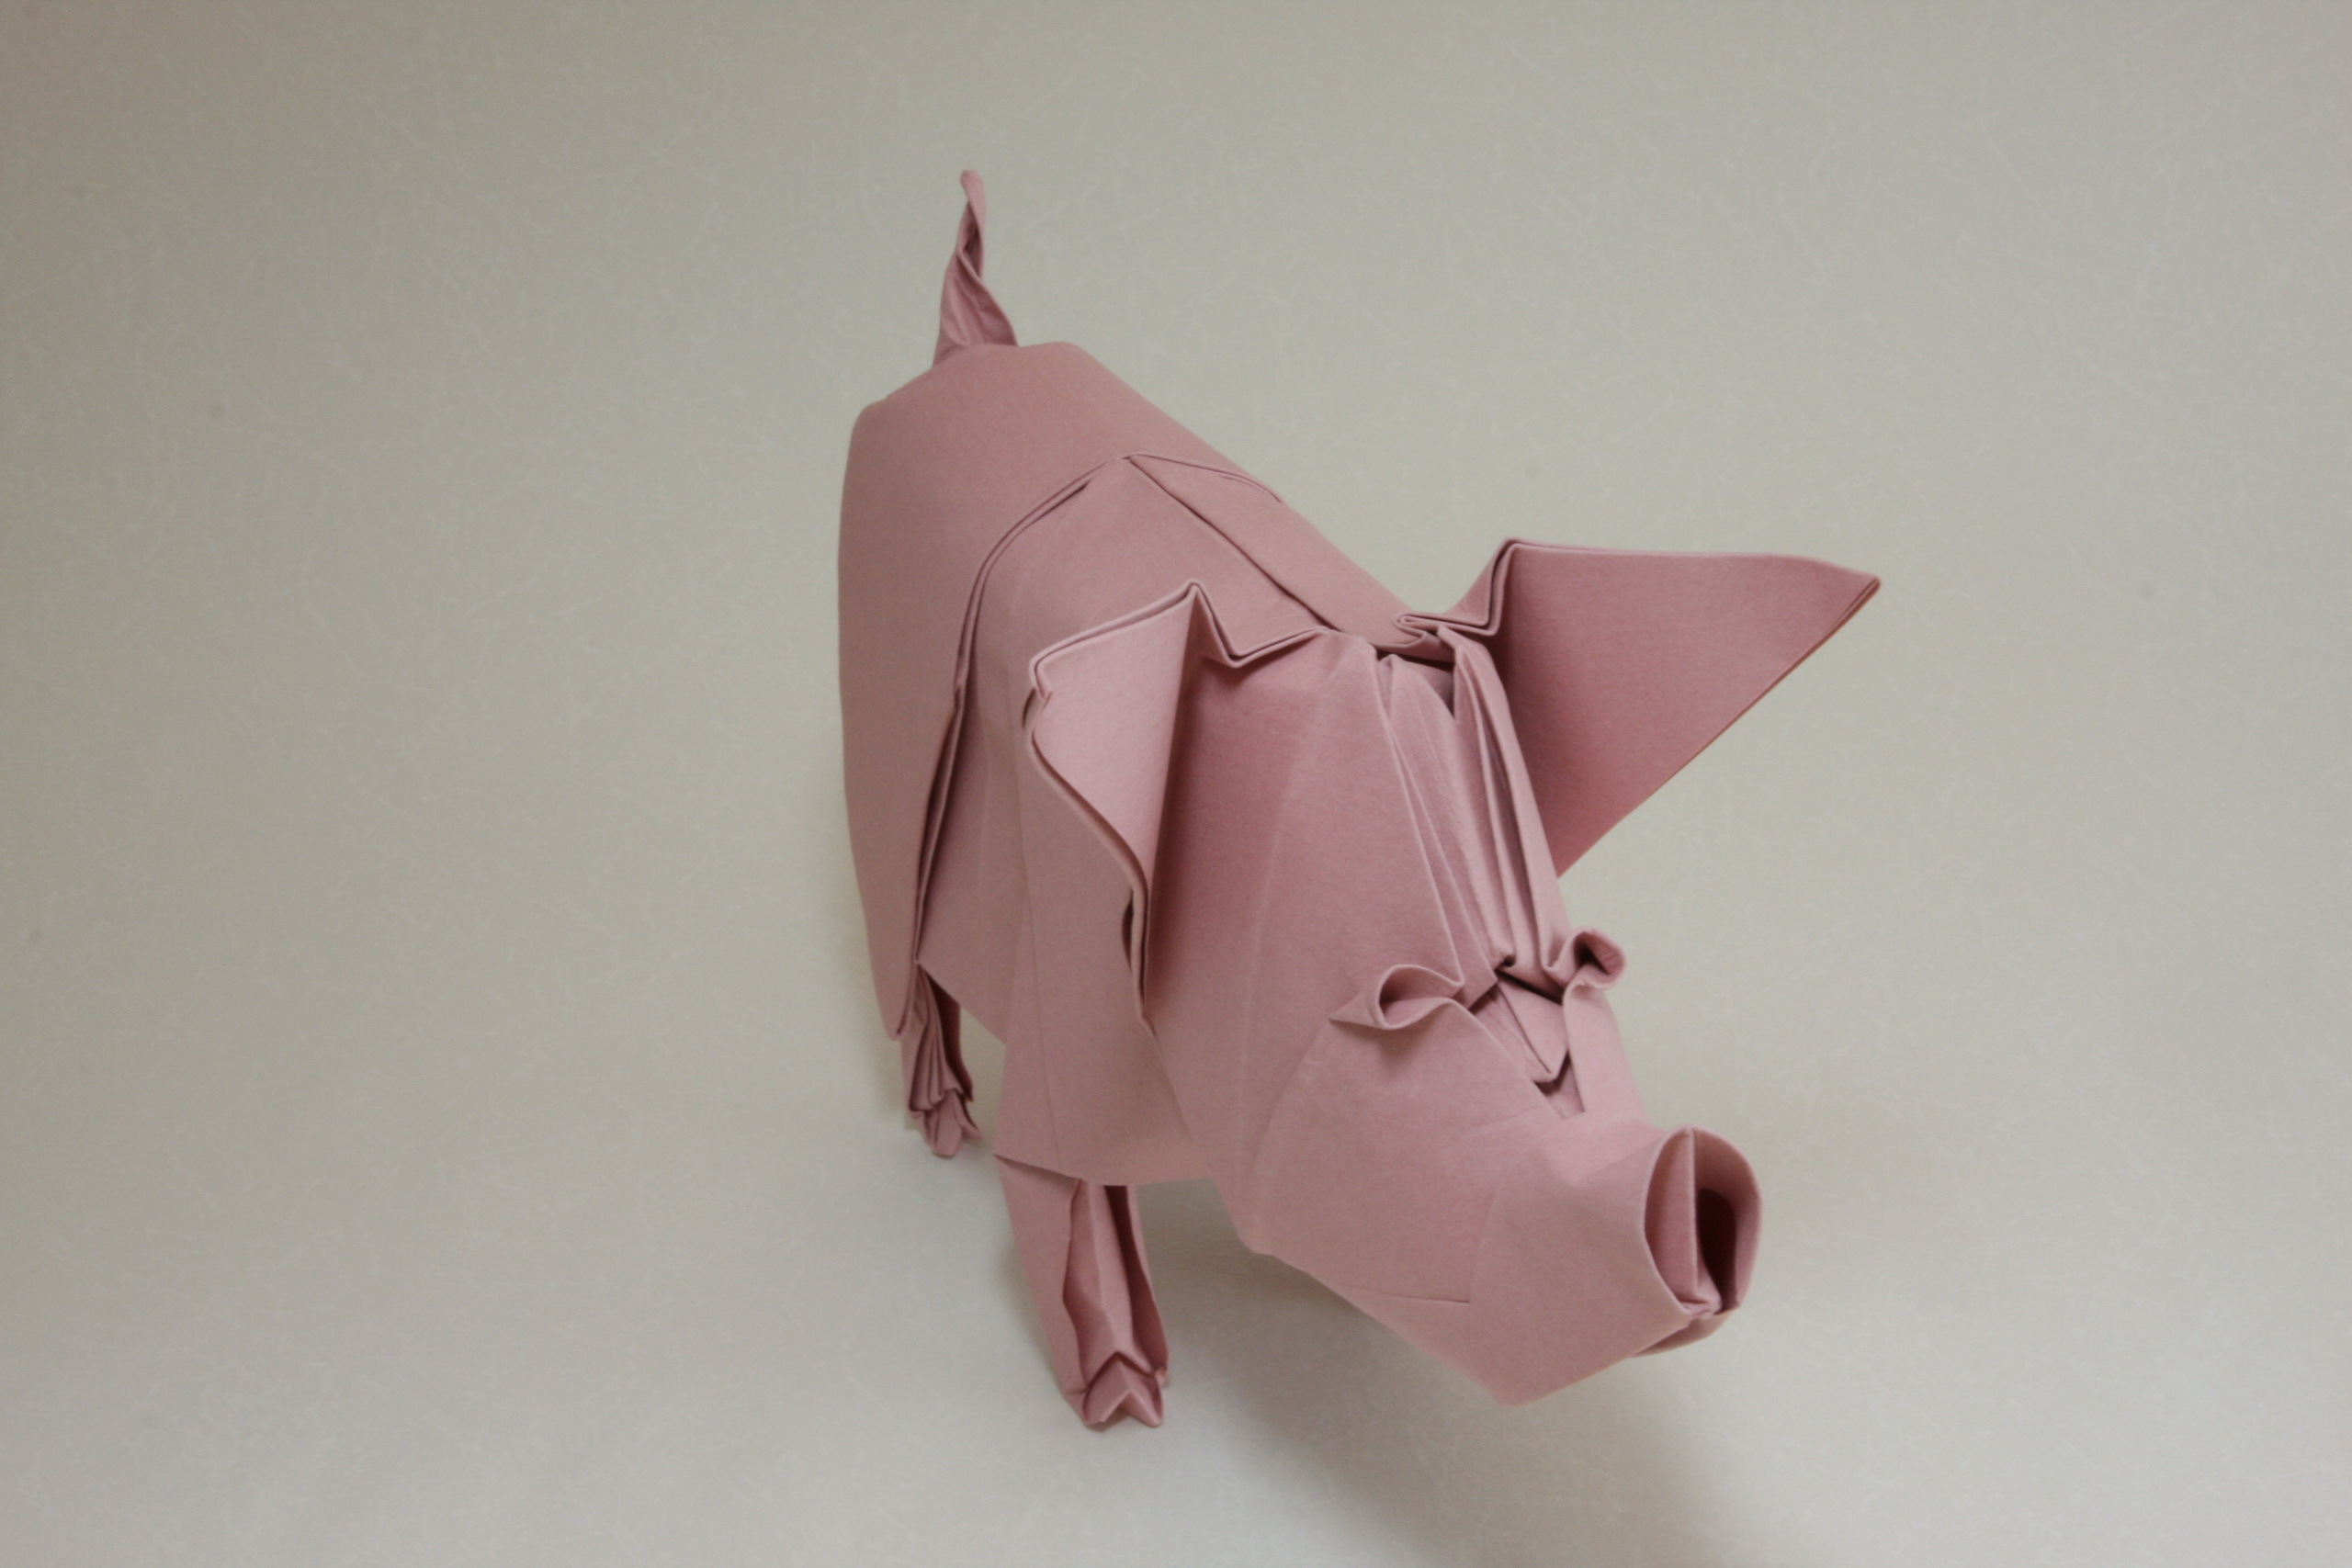 Скачать обои бесплатно Свинья, Оригами, Сделано Человеком картинка на рабочий стол ПК